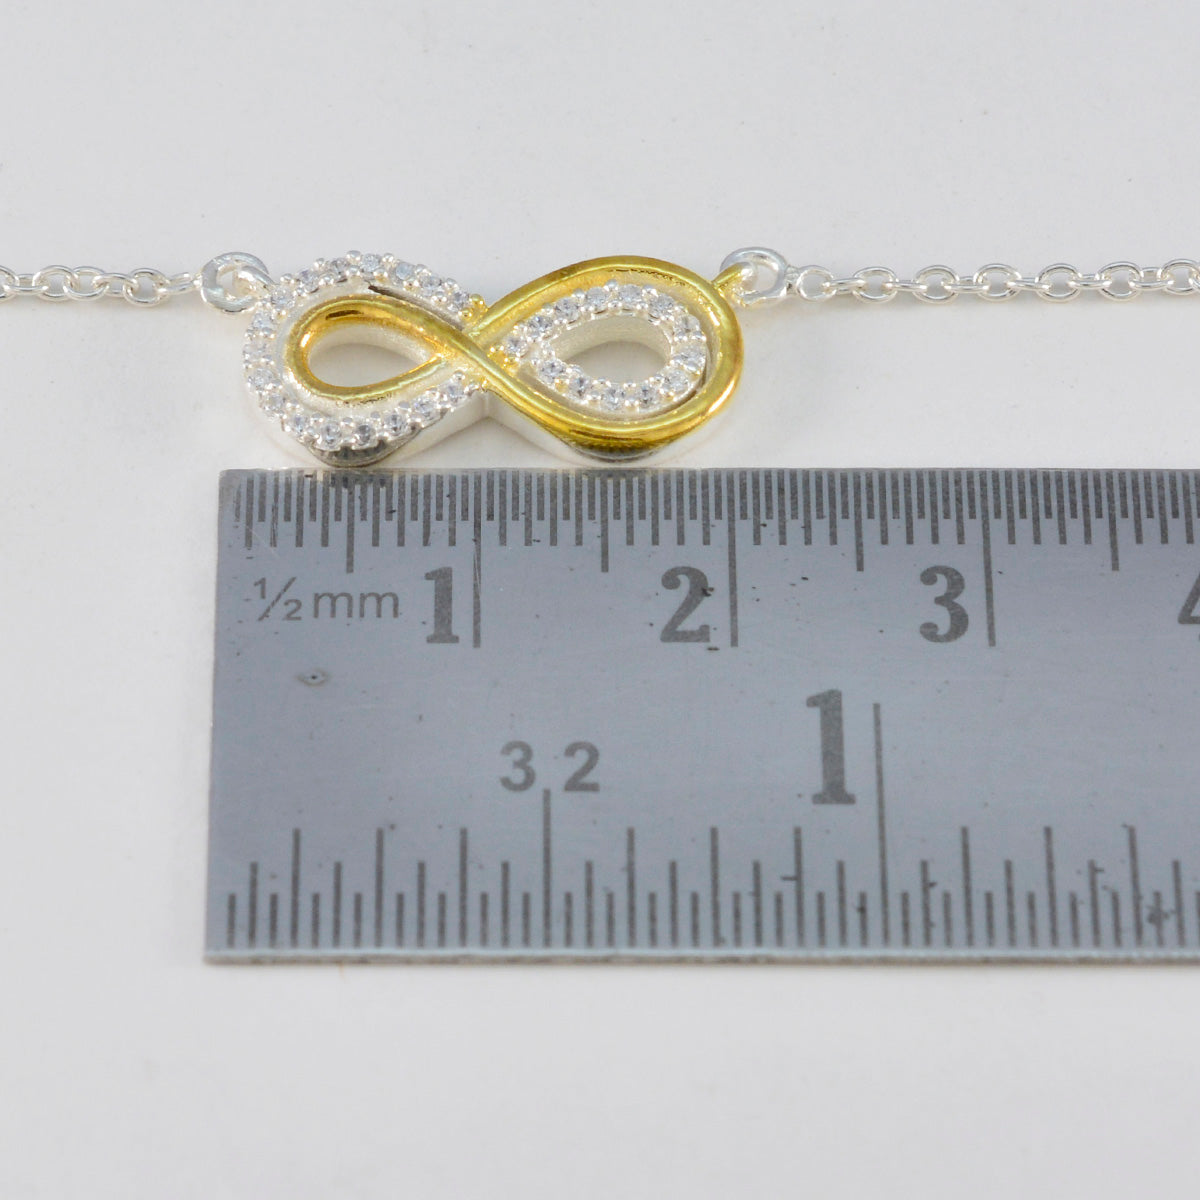 Riyo Prepossessing Gemstone Round Faceted White White Cz Sterling Silver Pendant Gift For Women